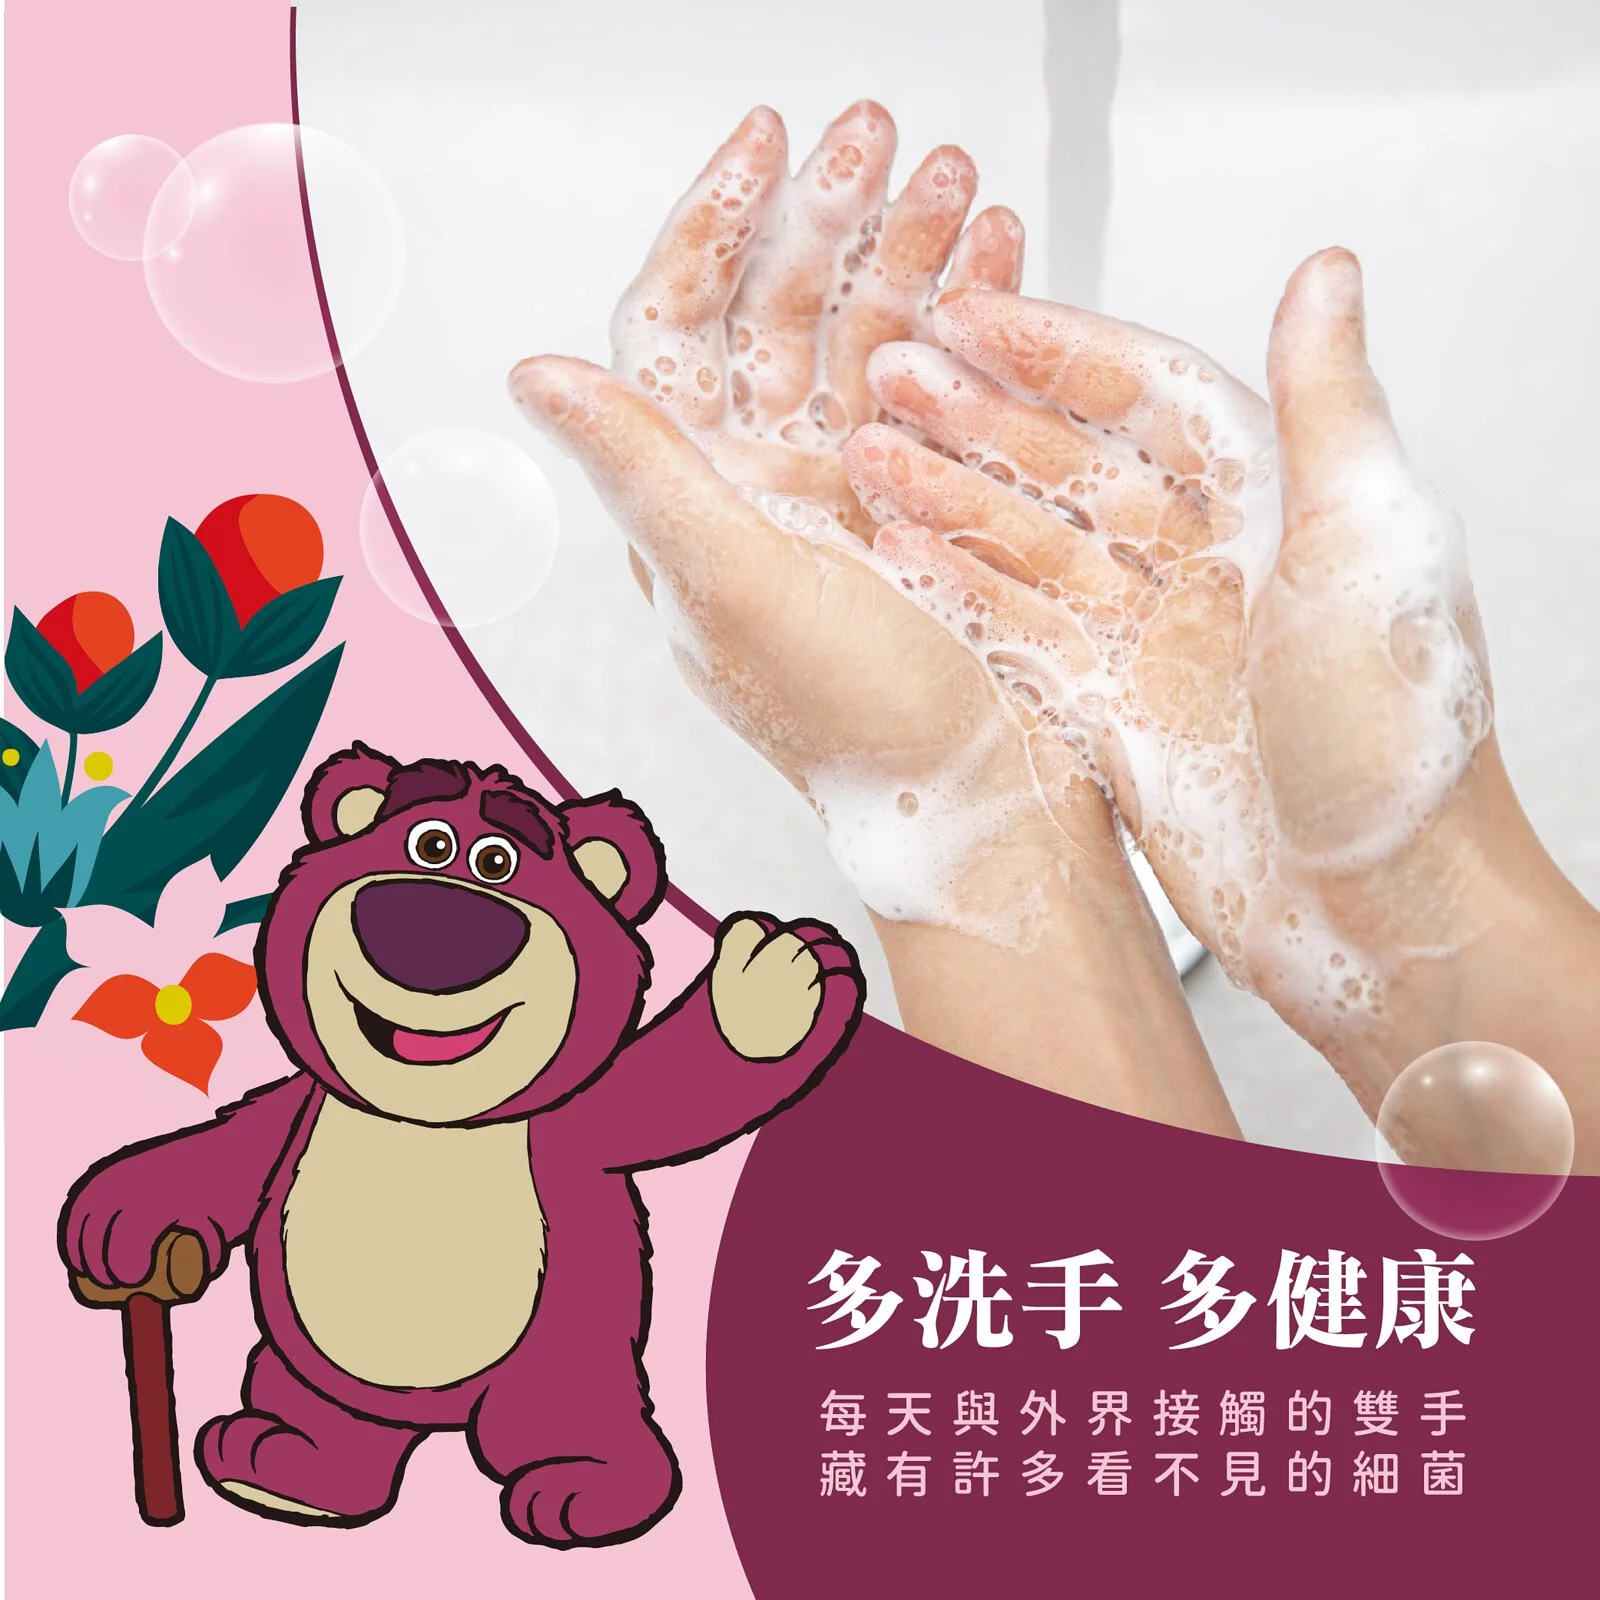 【御衣坊】熊抱哥香氛洗手乳300ml(清甜莓果)